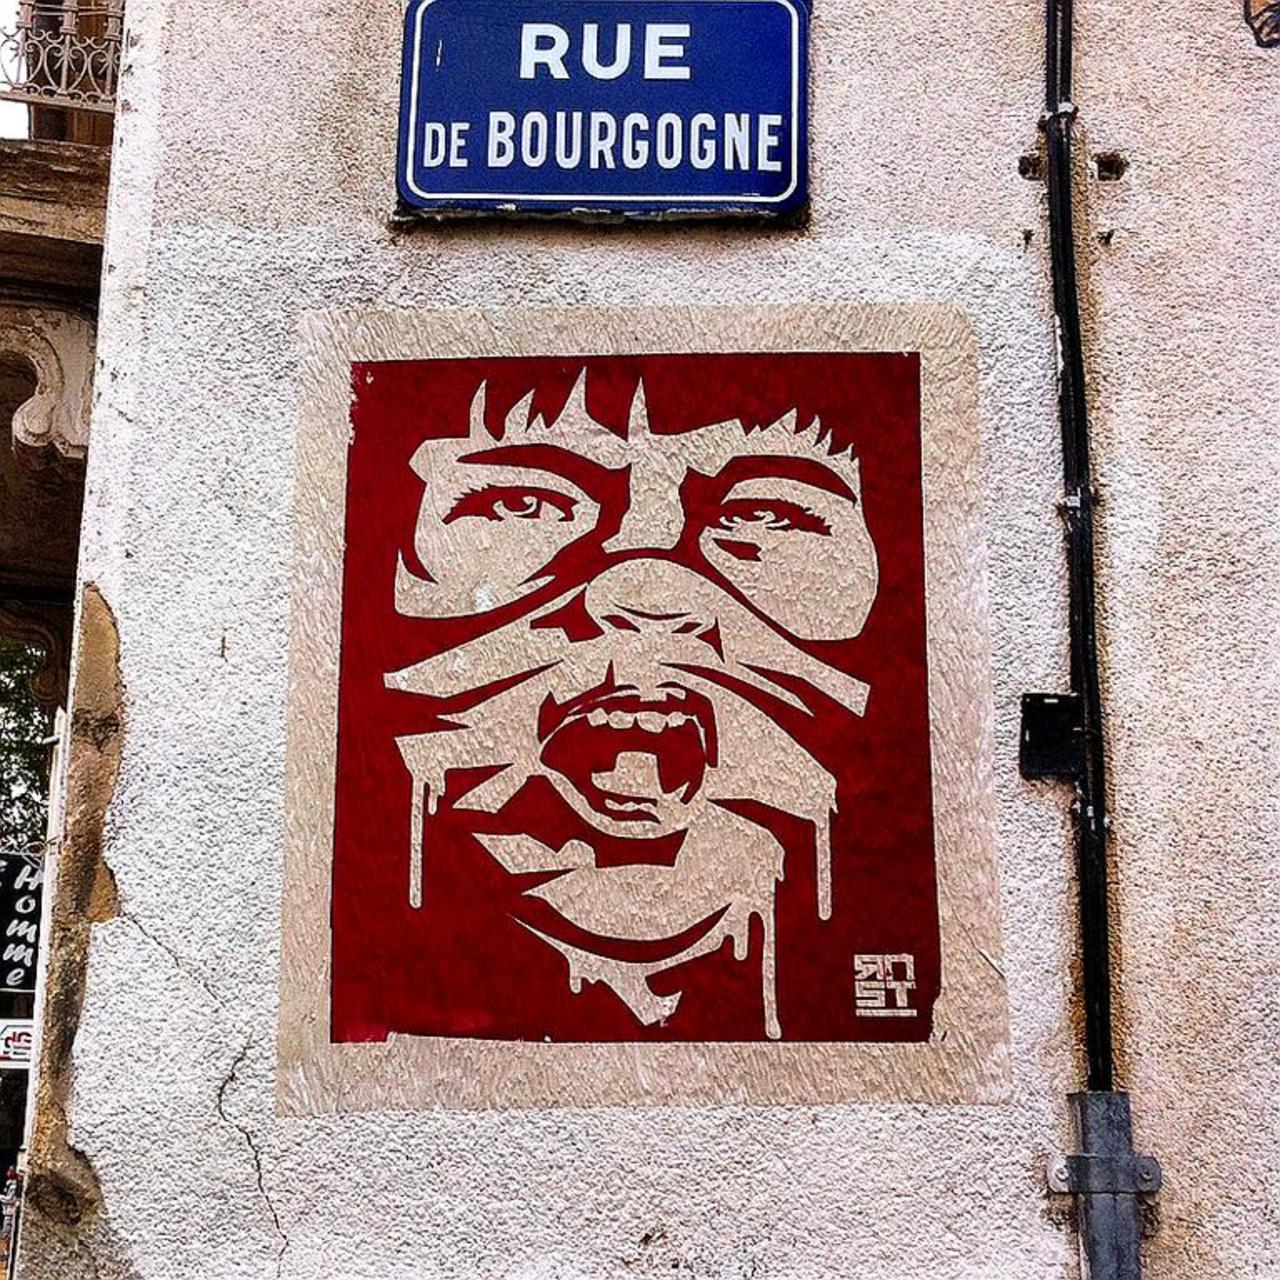 Street Art by RNST in #Nîmes http://www.urbacolors.com #art #mural #graffiti #streetart http://t.co/6p1KrQT6WK